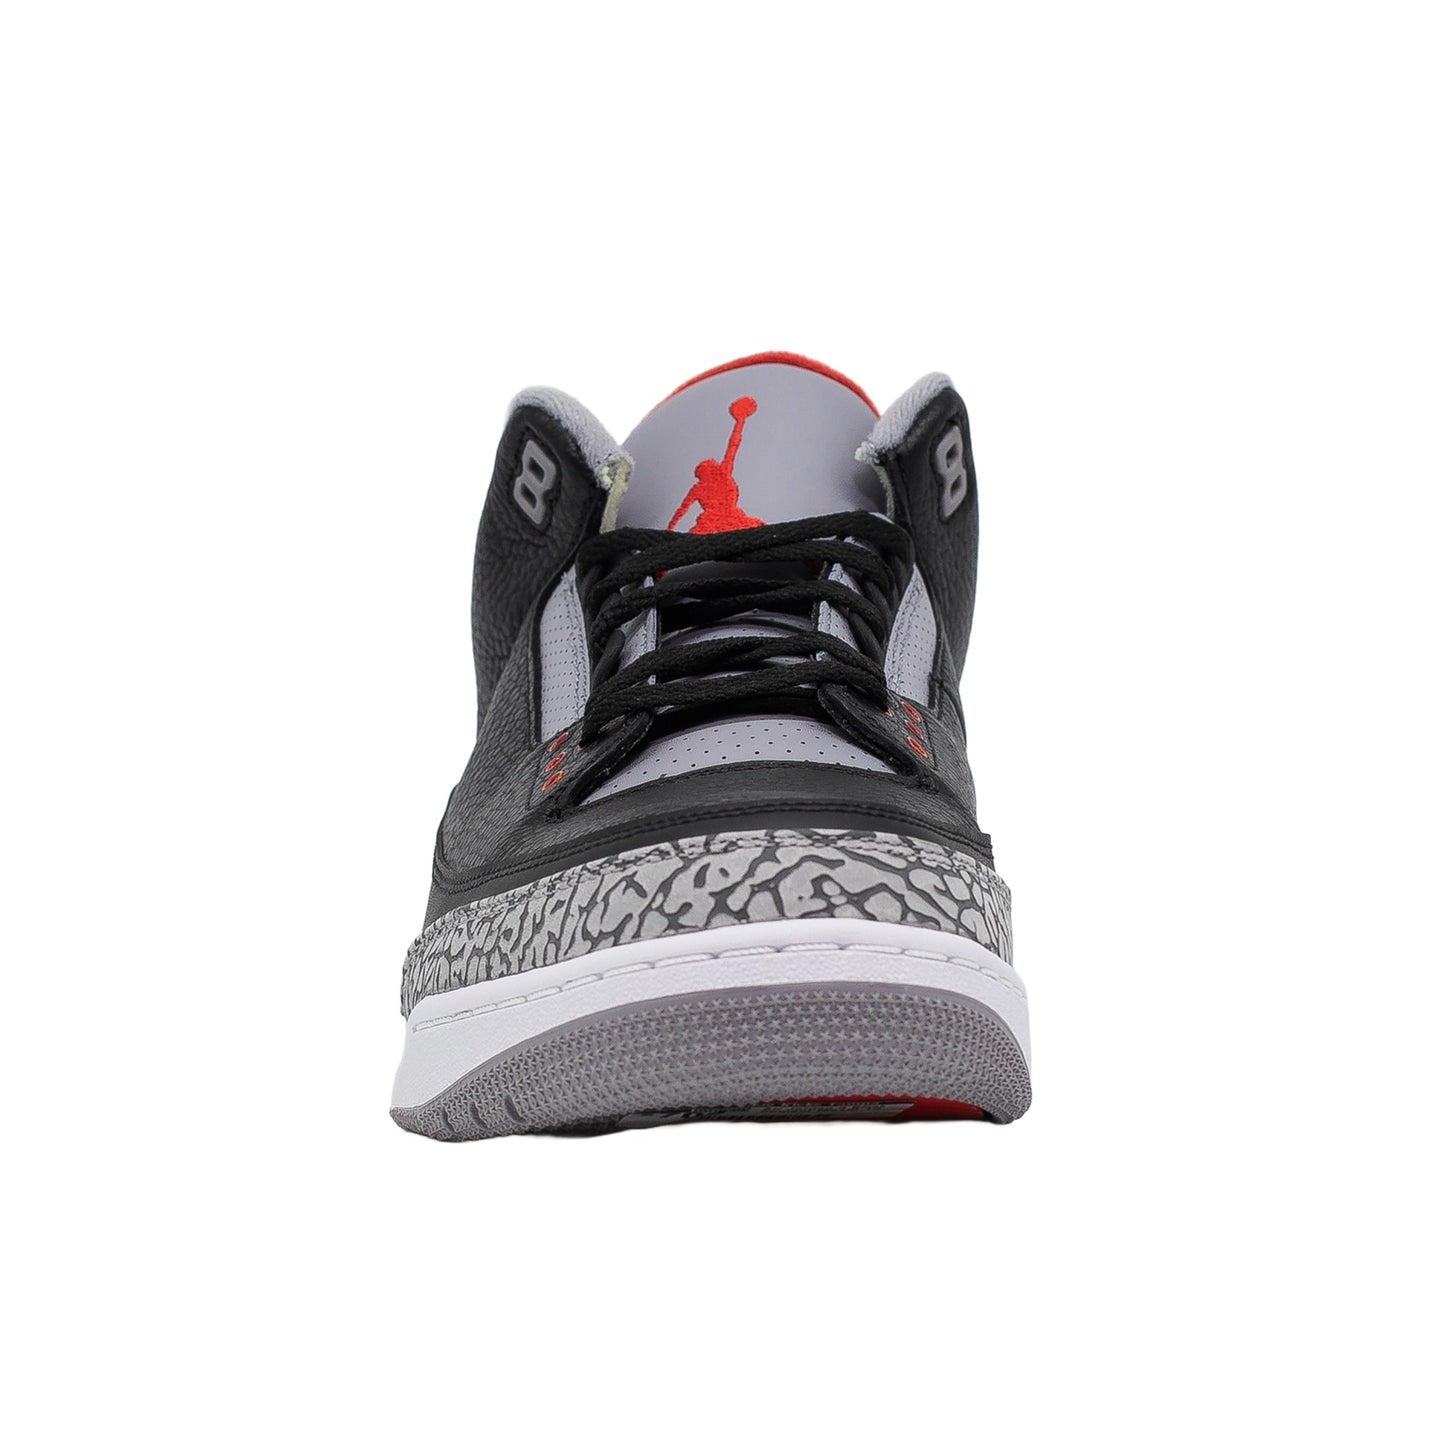 Air Jordan 3, Black Cement (2018)